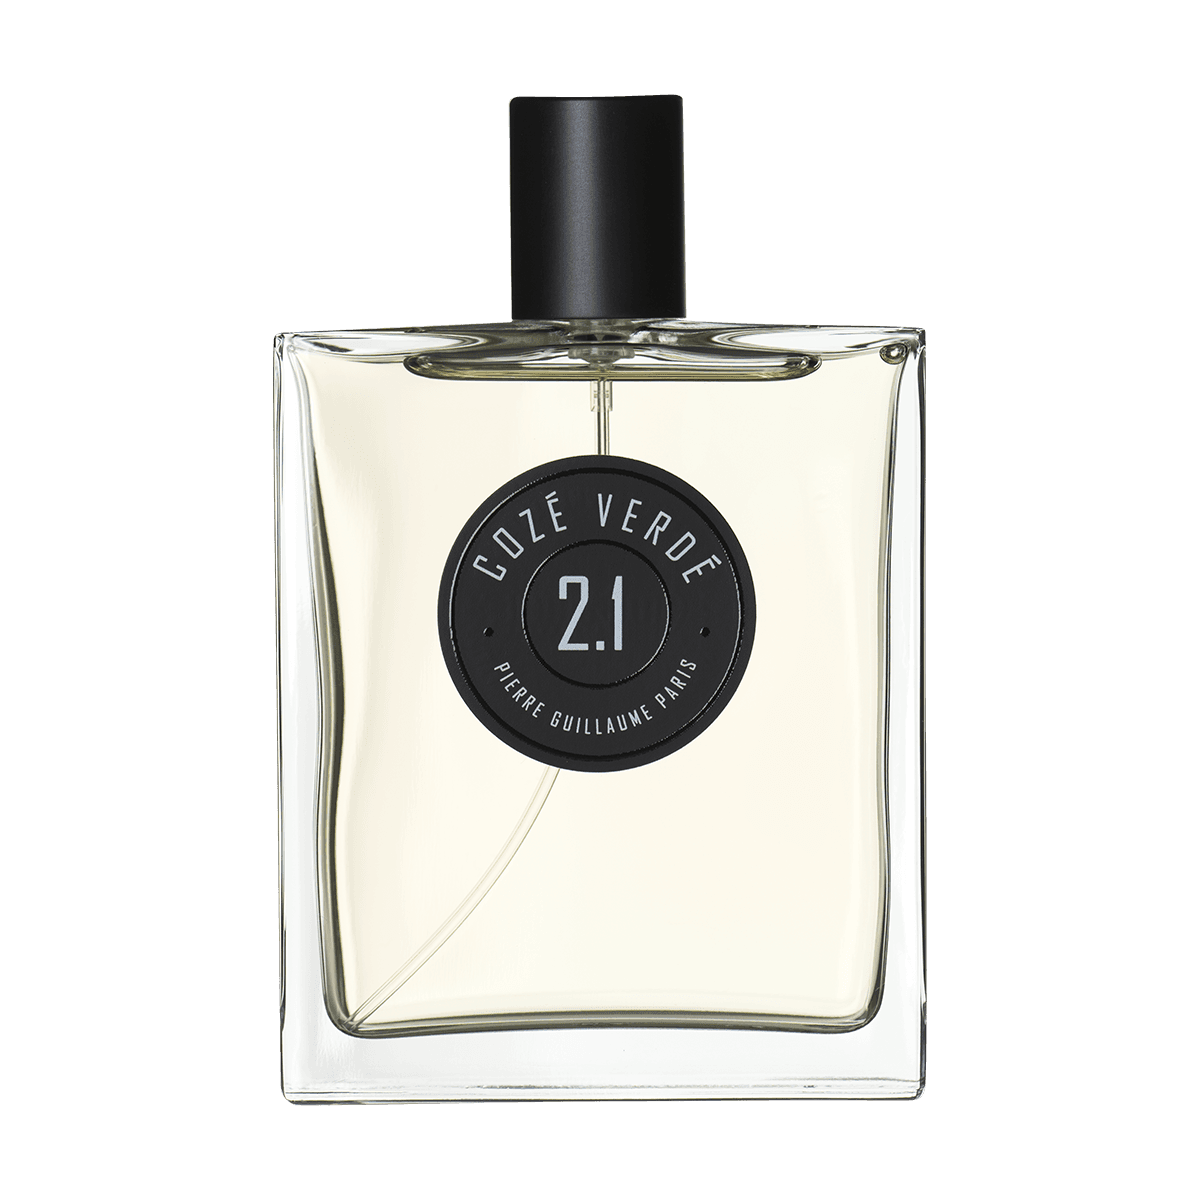 Pierre Guillaume Paris - 02.1 Coze Verde 100 ml | Perfume Lounge